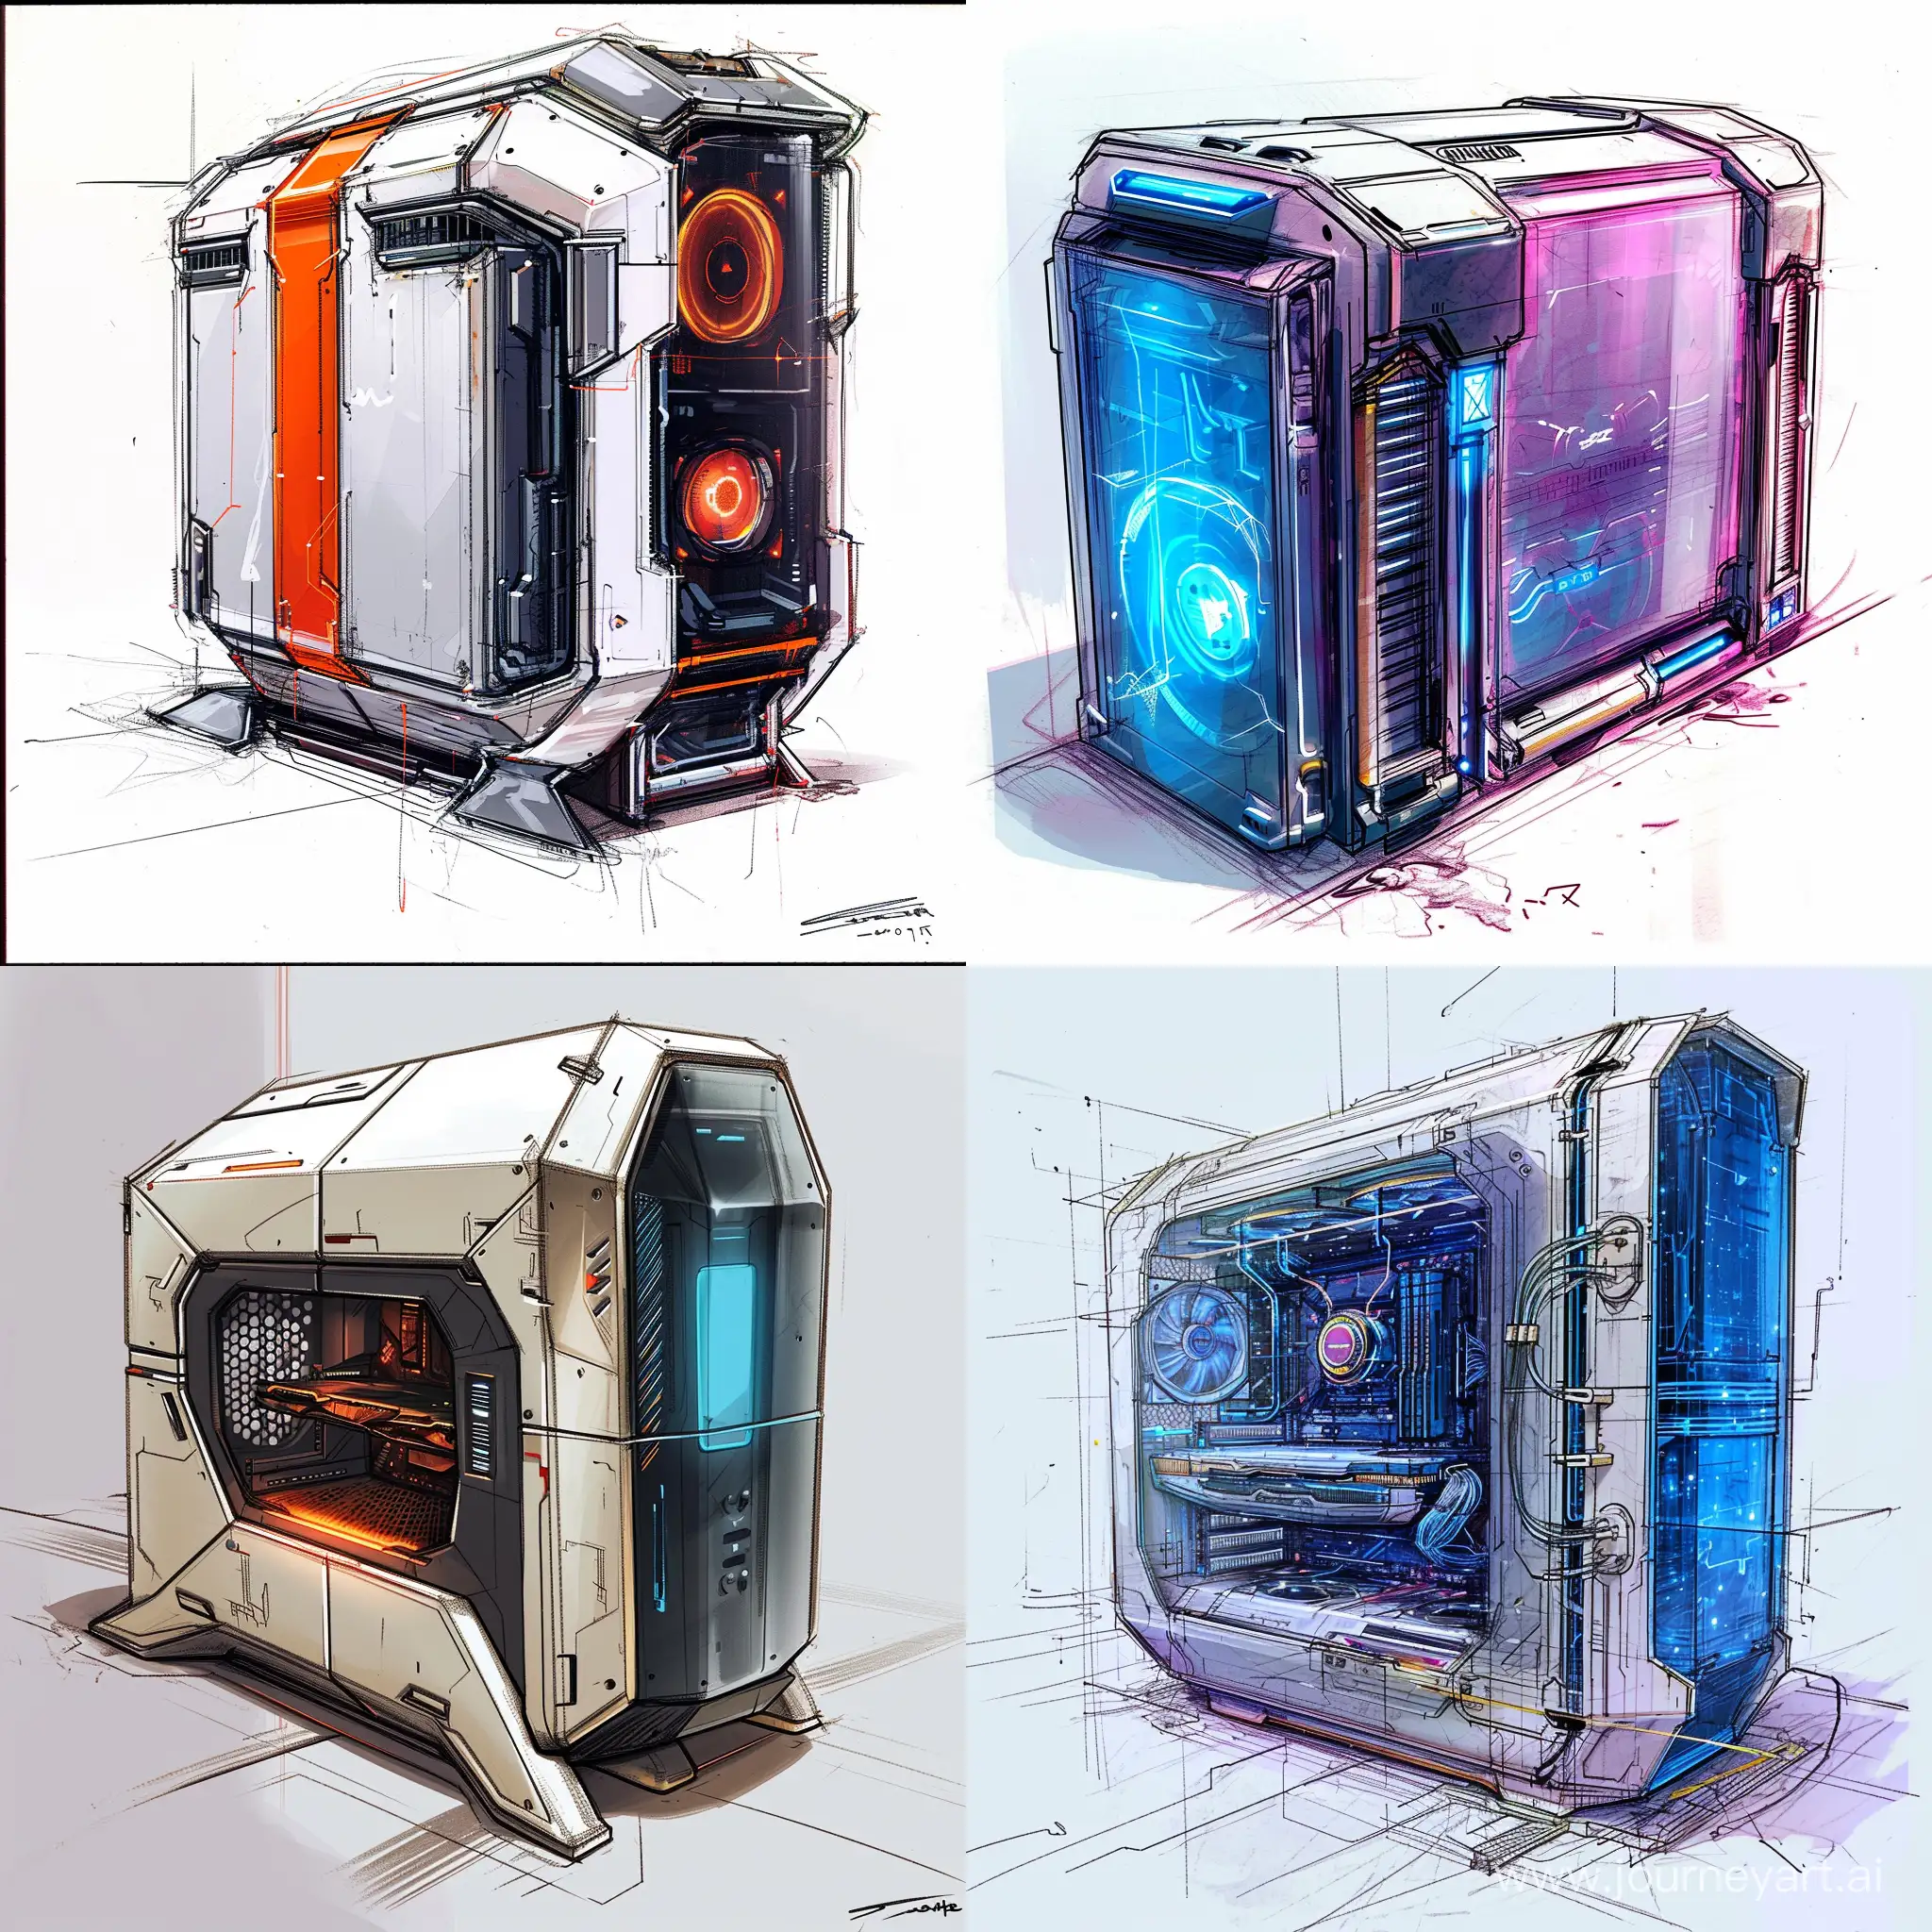 Futuristic-PC-Case-Concept-Art-Drawing